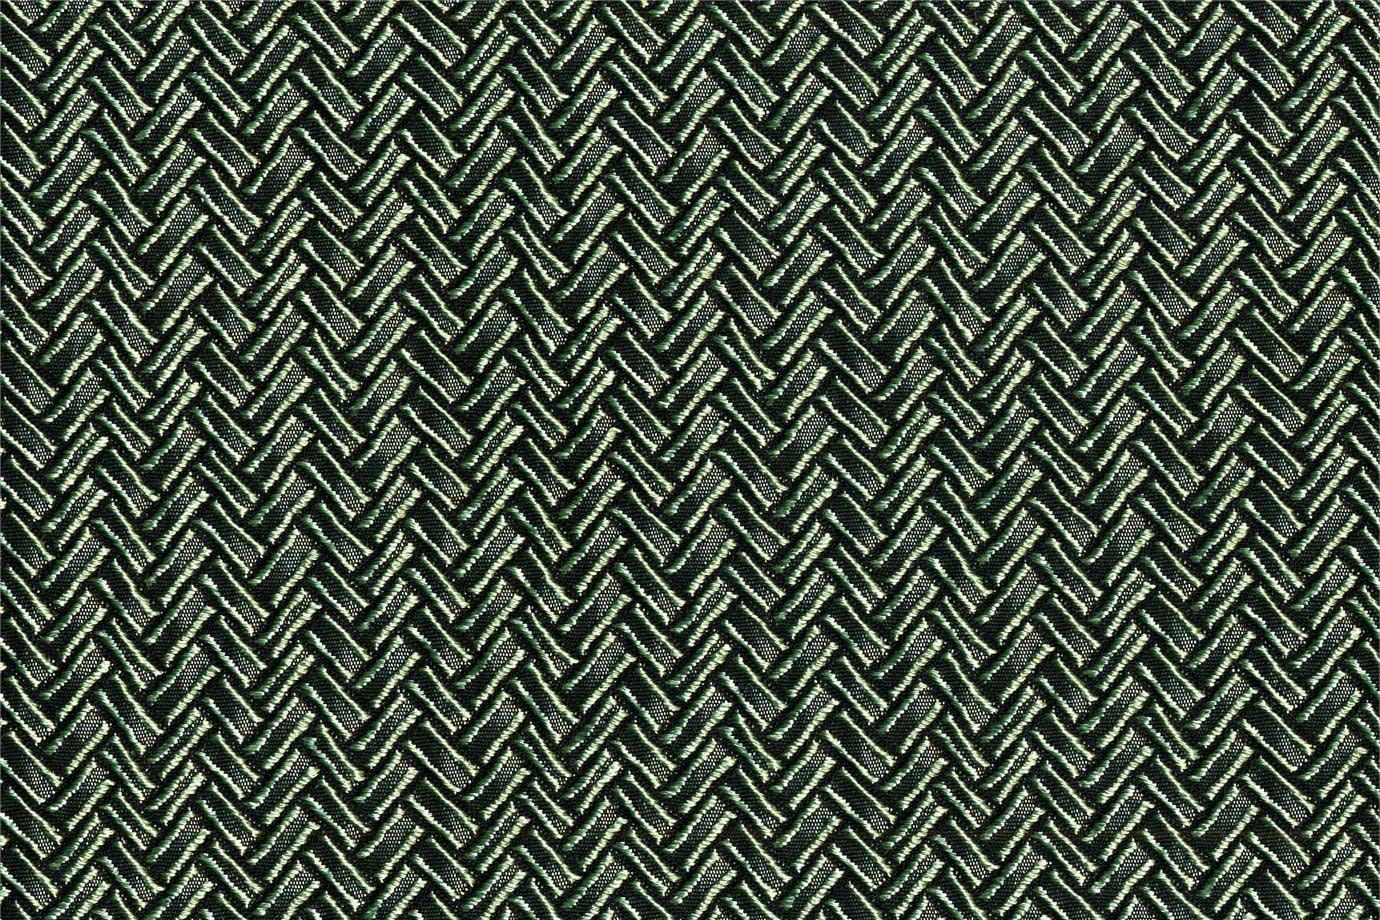 J1951 SECONDIGLIANO 018 Malachite home decoration fabric